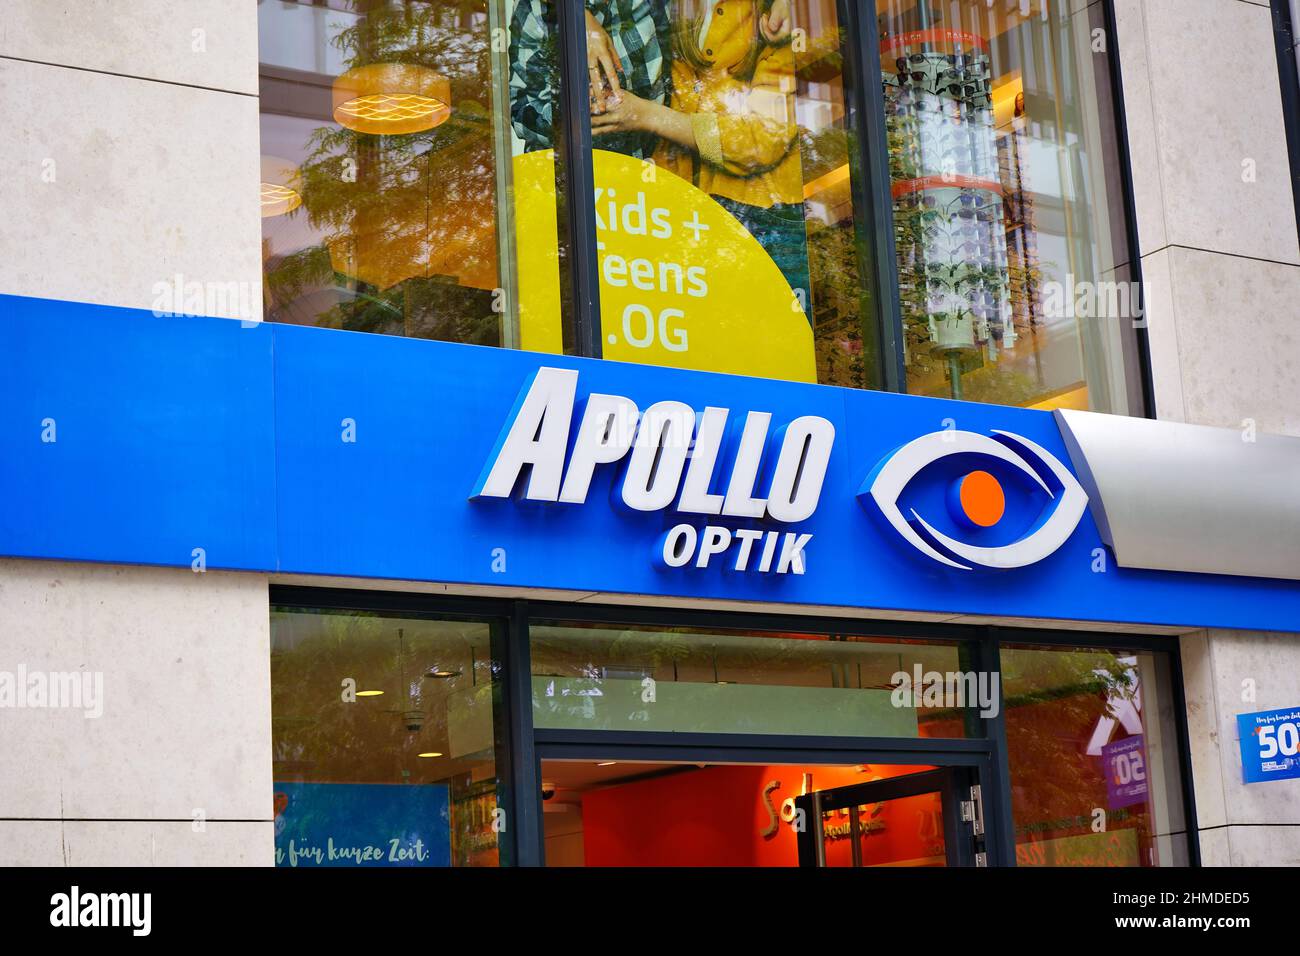 Le magasin Apollo Optik se trouve dans la rue commerçante Shadowstraße à Düsseldorf. Apollo Optik est une chaîne de magasins d'opticiens allemands. Banque D'Images